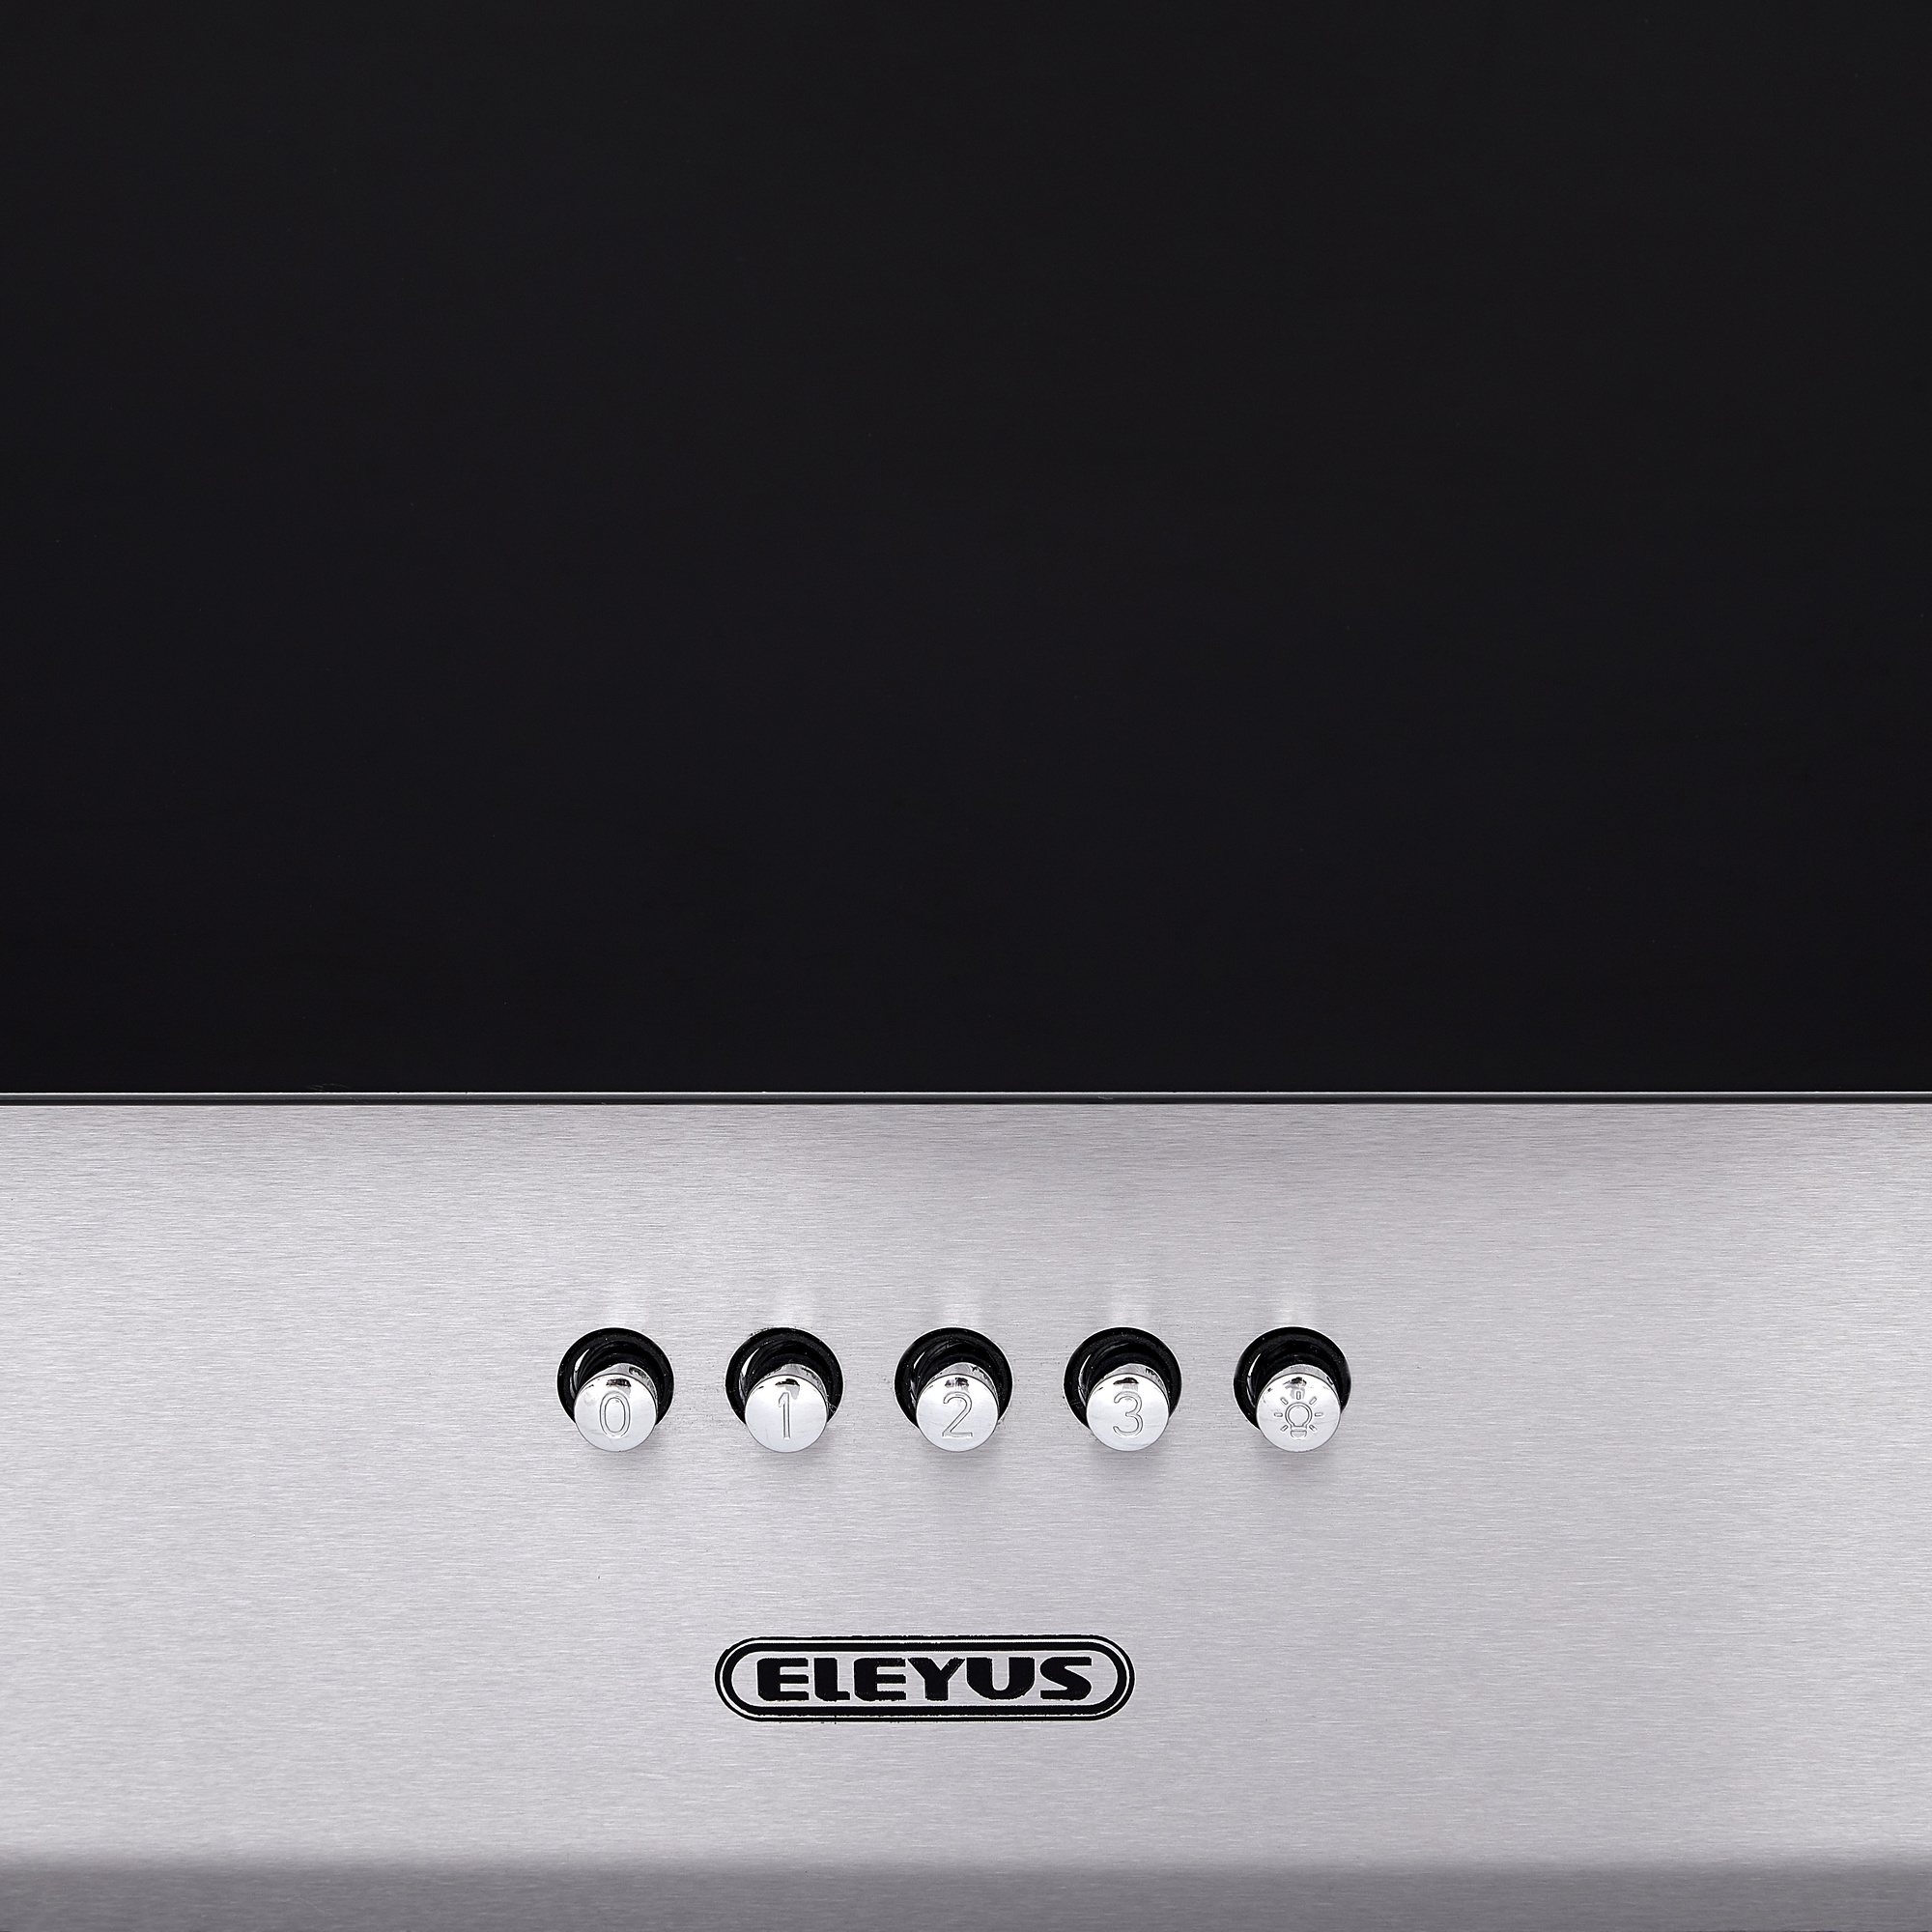 Кухонная вытяжка Eleyus Focus 1000 50 IS+BL обзор - фото 8